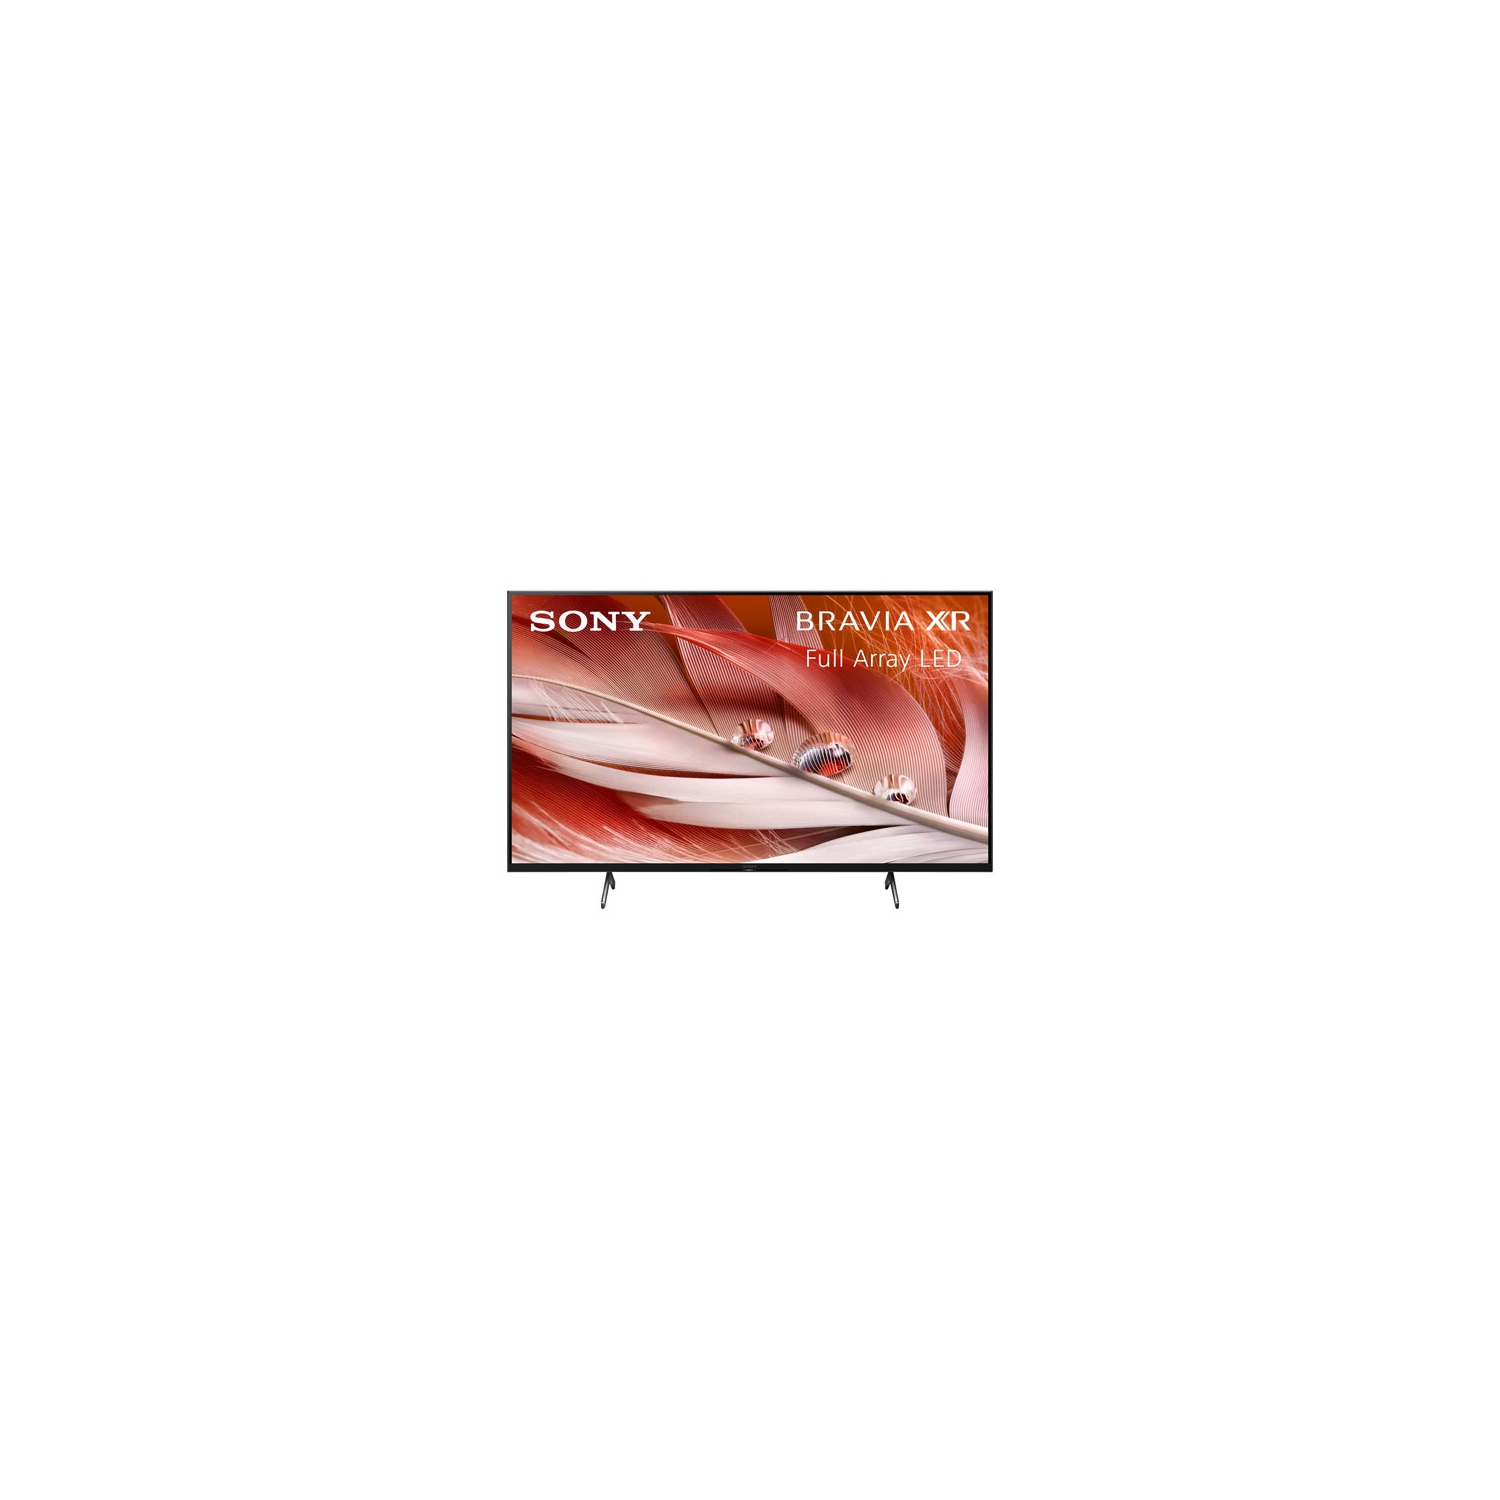 Refurbished (Excellent) -Sony BRAVIA XR X90J 50" 4K UHD HDR LED Smart Google TV (XR50X90J) -2021